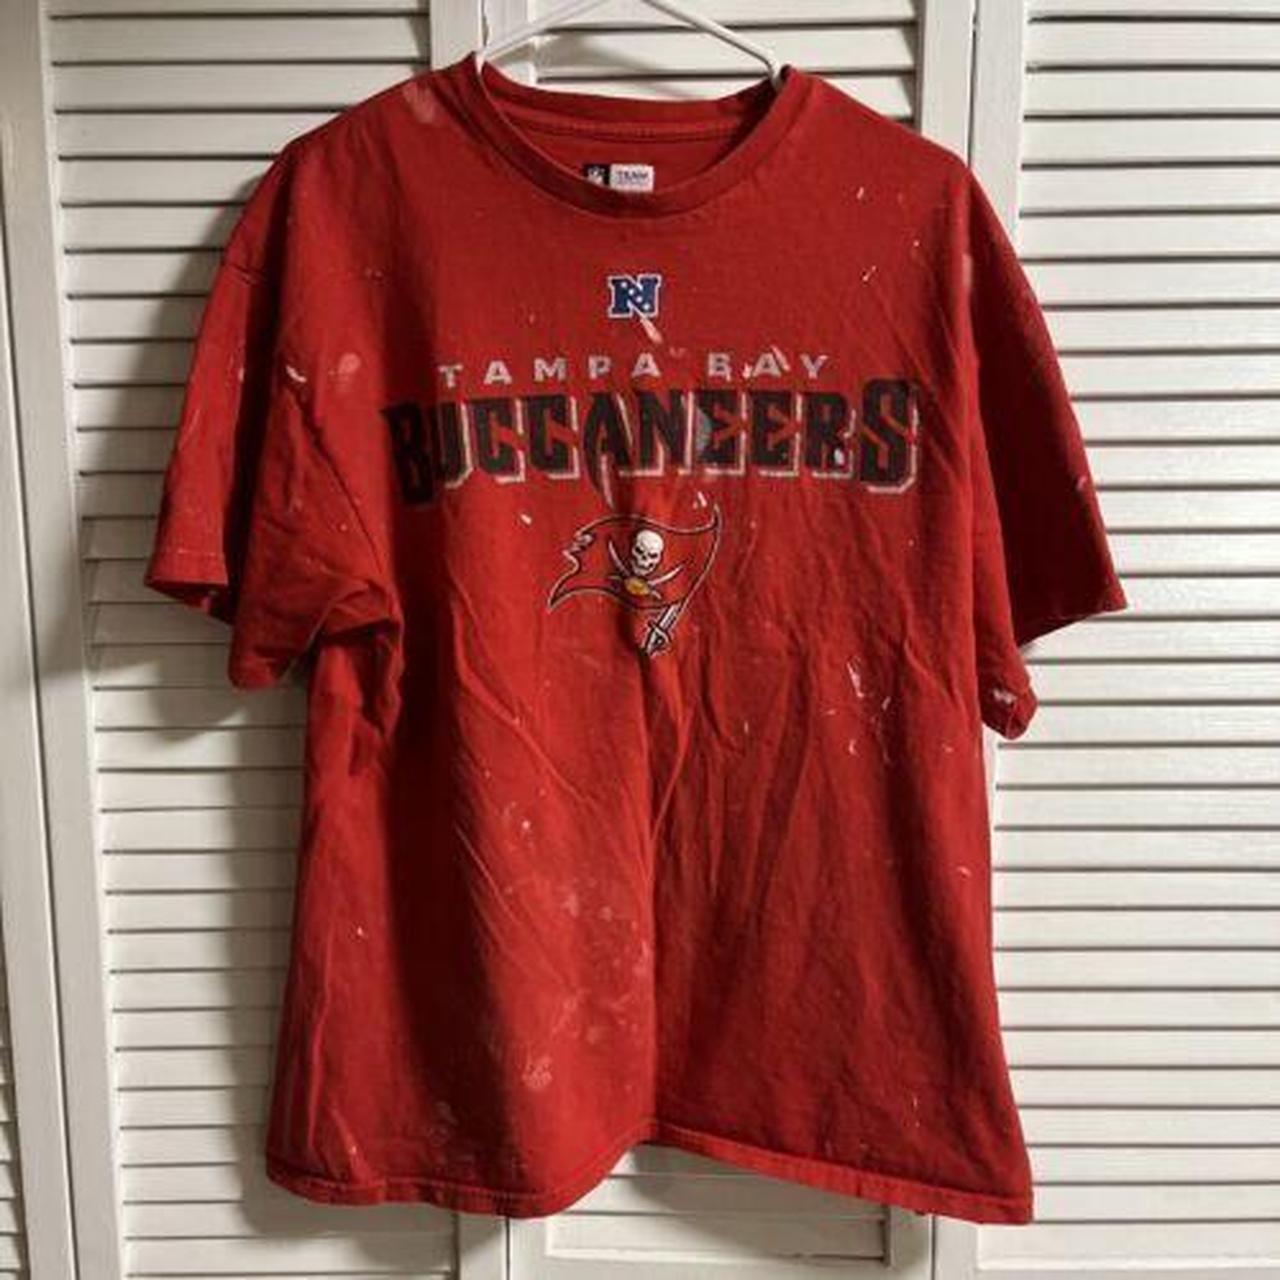 NFL Men's Shirt - Red - XL